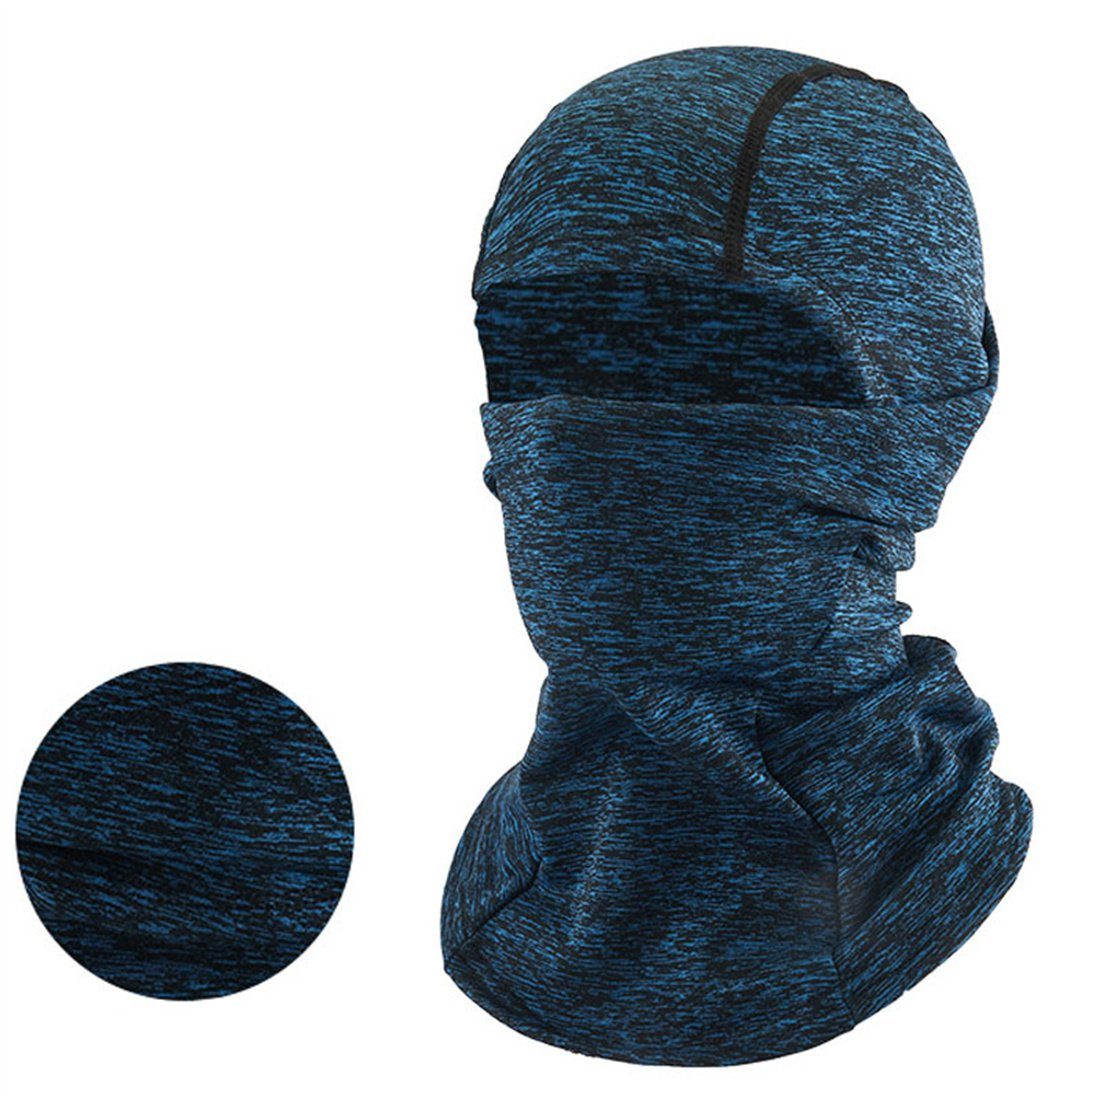 DÖRÖY Sturmhaube Winter Radfahren warme Maske, kalte Ski Kopfbedeckung, unisex blau